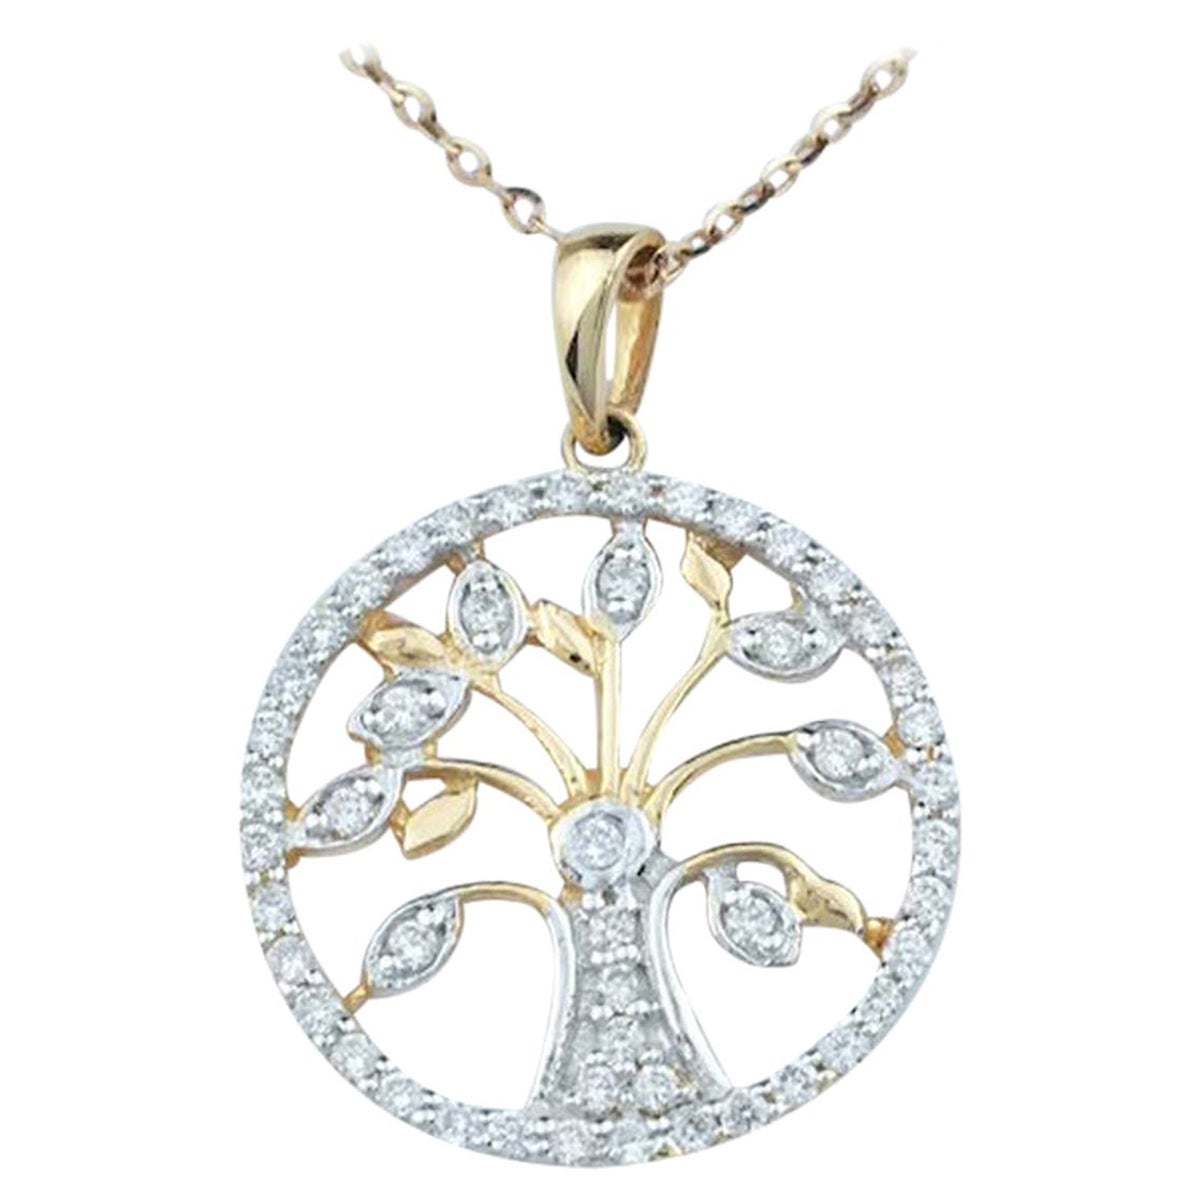 Baum des Lebens Halskette mit natürlichen Diamanten gefasst ist aus 14k massivem Gold.
Erhältlich in drei Goldfarben:  Roségold / Weißgold / Gelbgold.

Natürlicher, echter, rund geschliffener Diamant - jeder Diamant wird von mir von Hand ausgewählt,